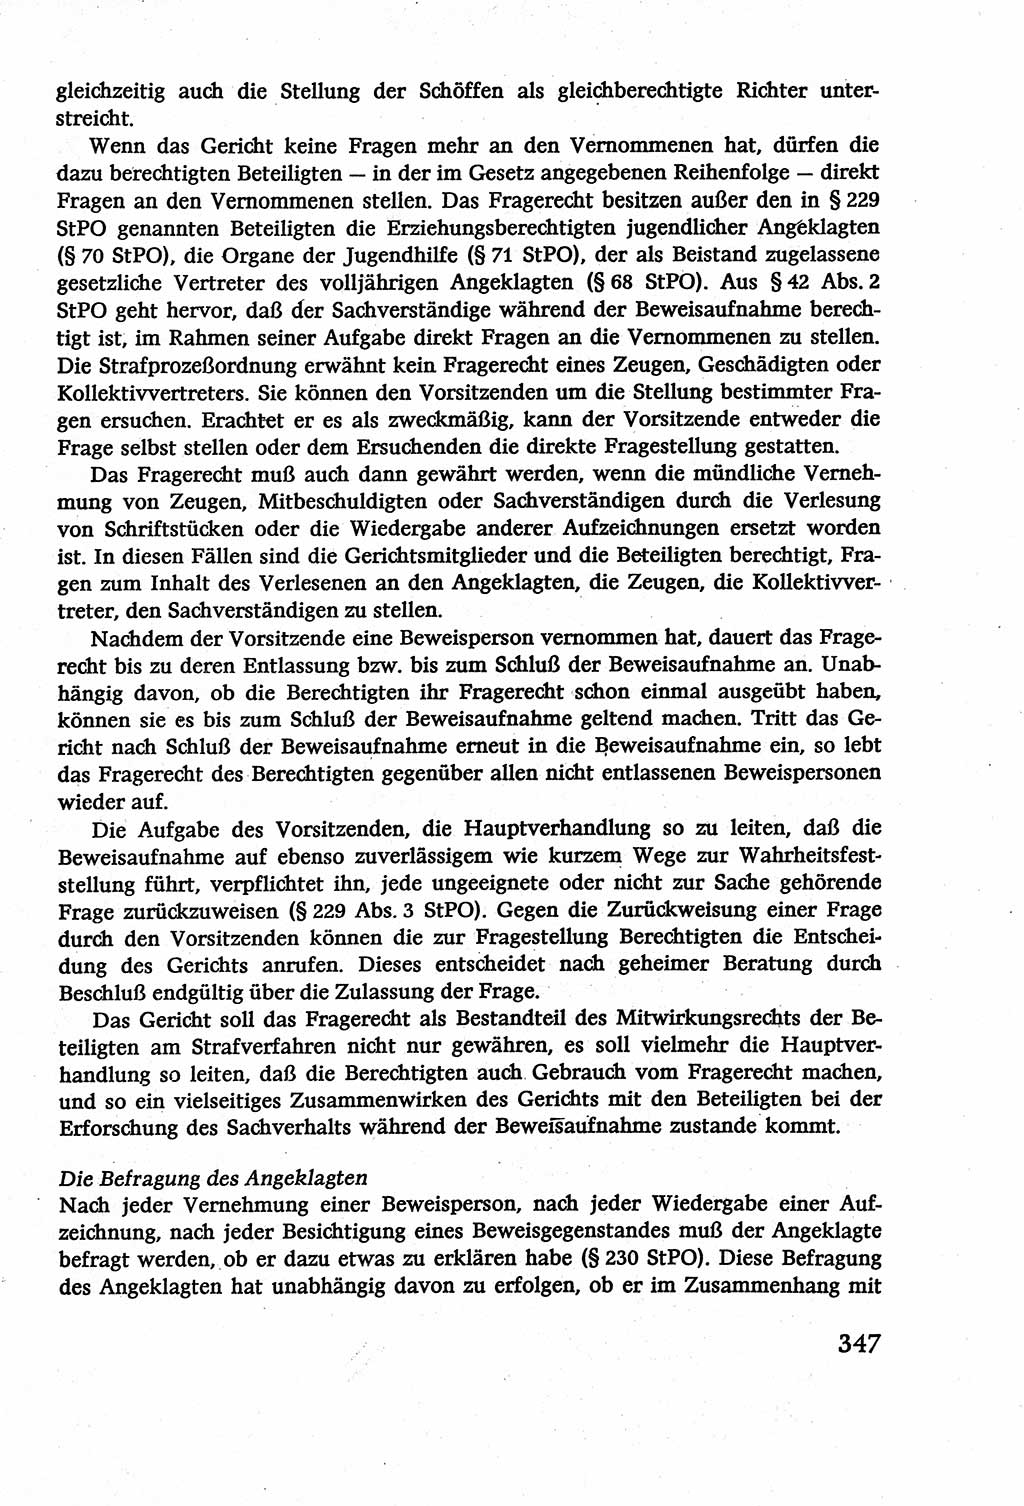 Strafverfahrensrecht [Deutsche Demokratische Republik (DDR)], Lehrbuch 1977, Seite 347 (Strafverf.-R. DDR Lb. 1977, S. 347)